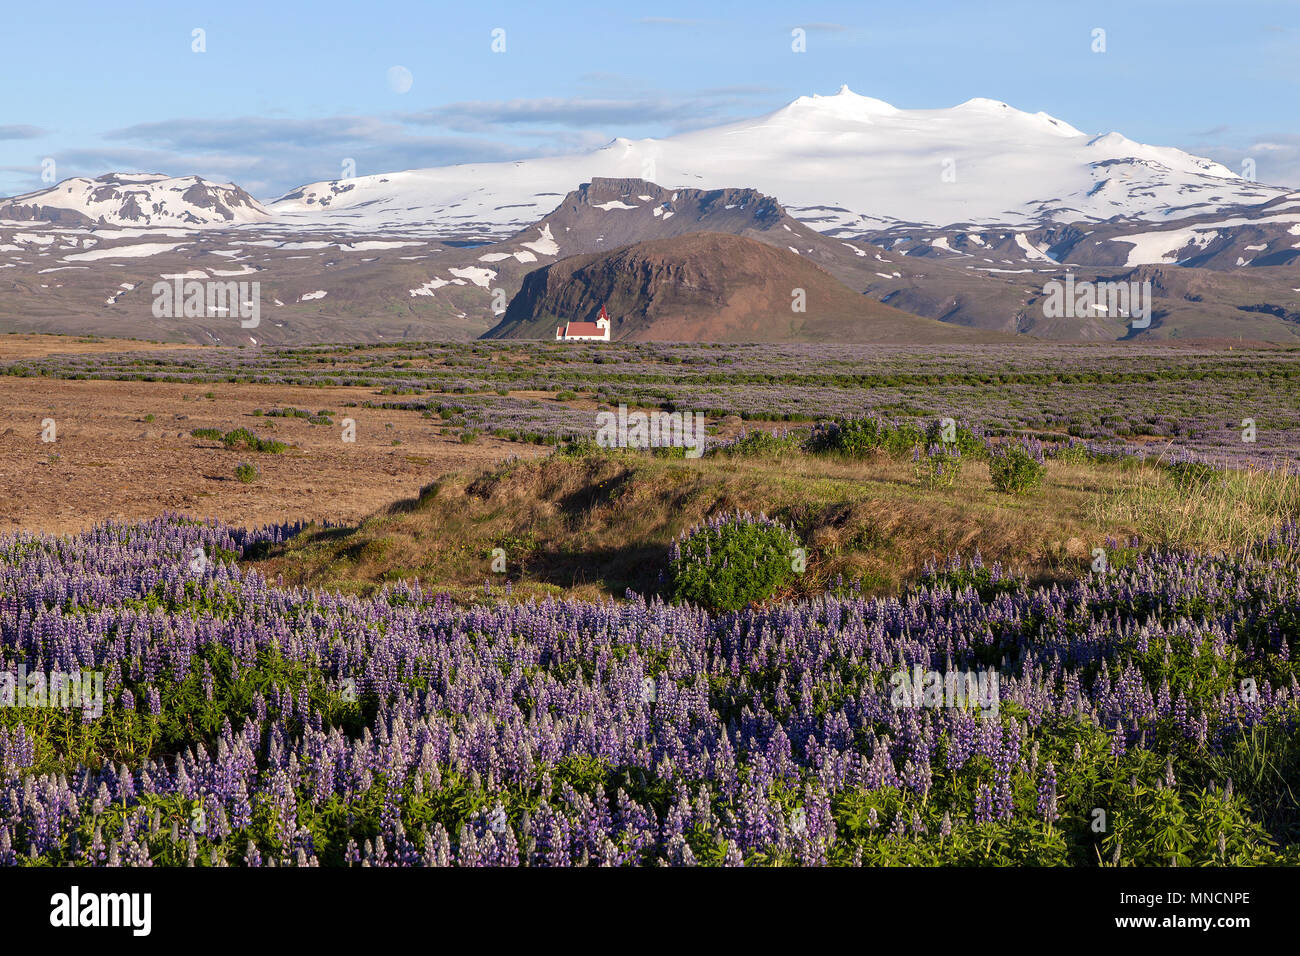 Paysage avec blue Nootka lupins (Lupinus nootkatensis), église paroissiale Ingjaldshóll en face du volcan Sneffels couverte de neige Banque D'Images